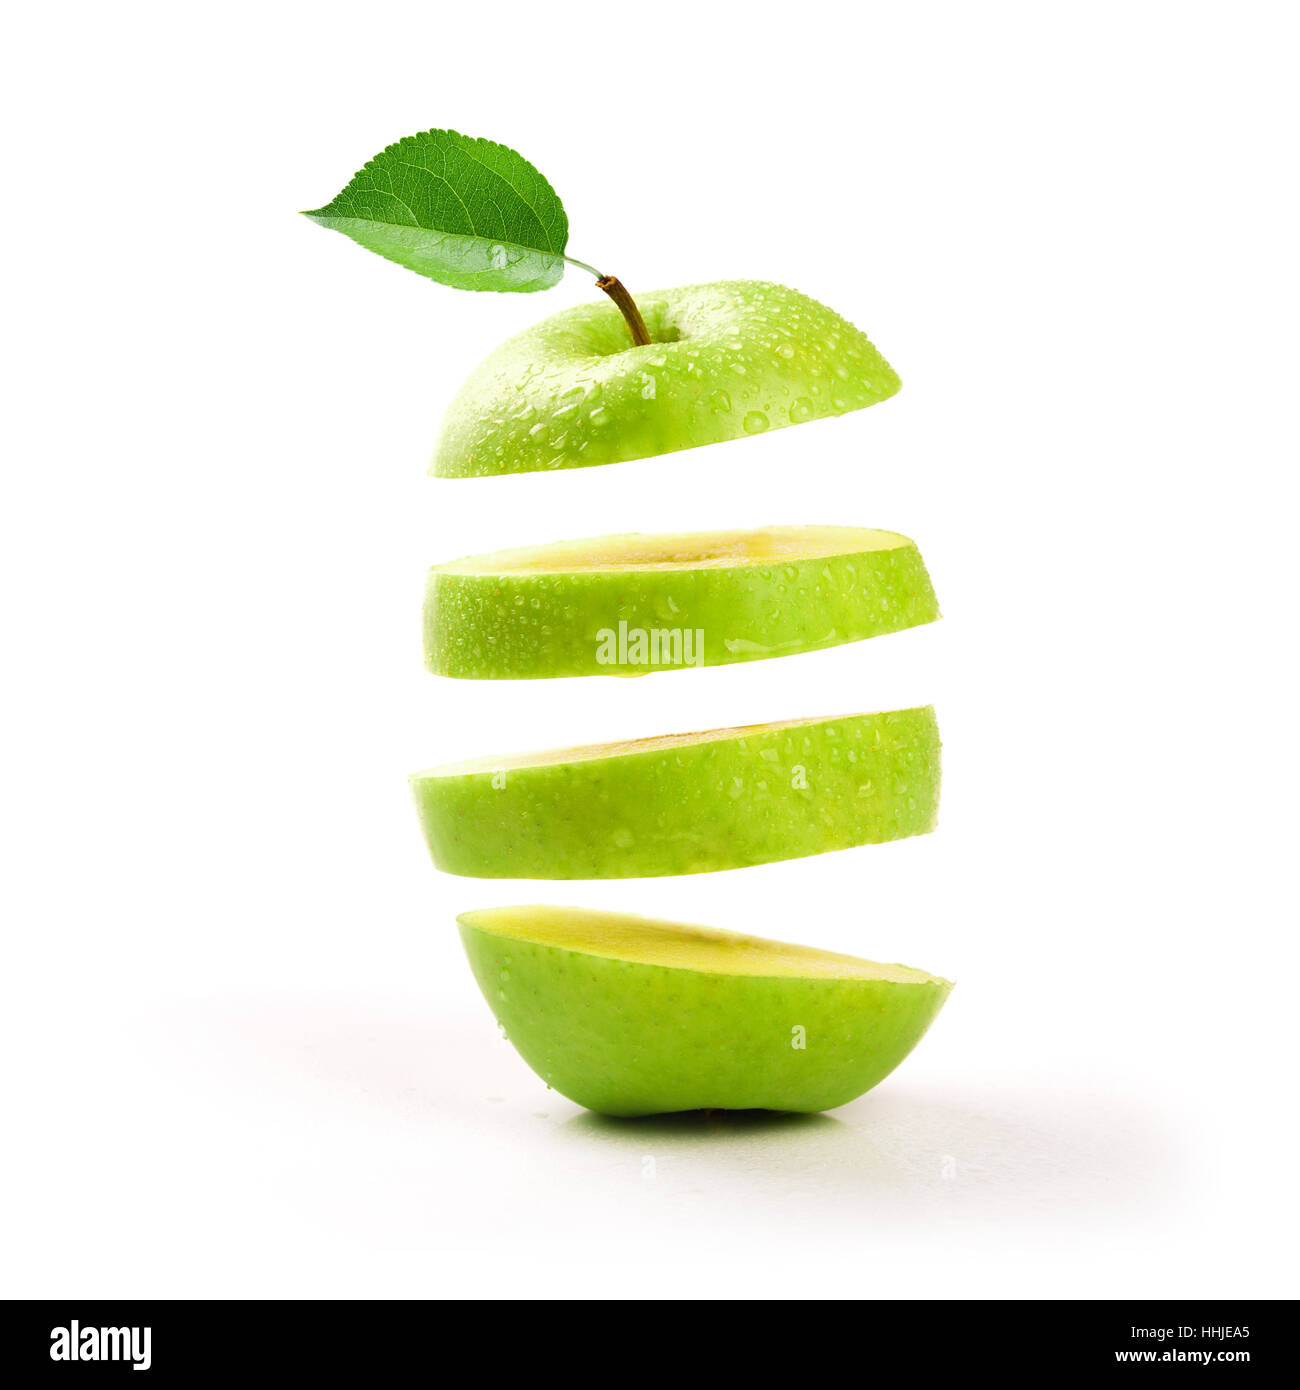 in Scheiben geschnitten, grüner Apfel schwebend auf weißem Hintergrund Stockfoto